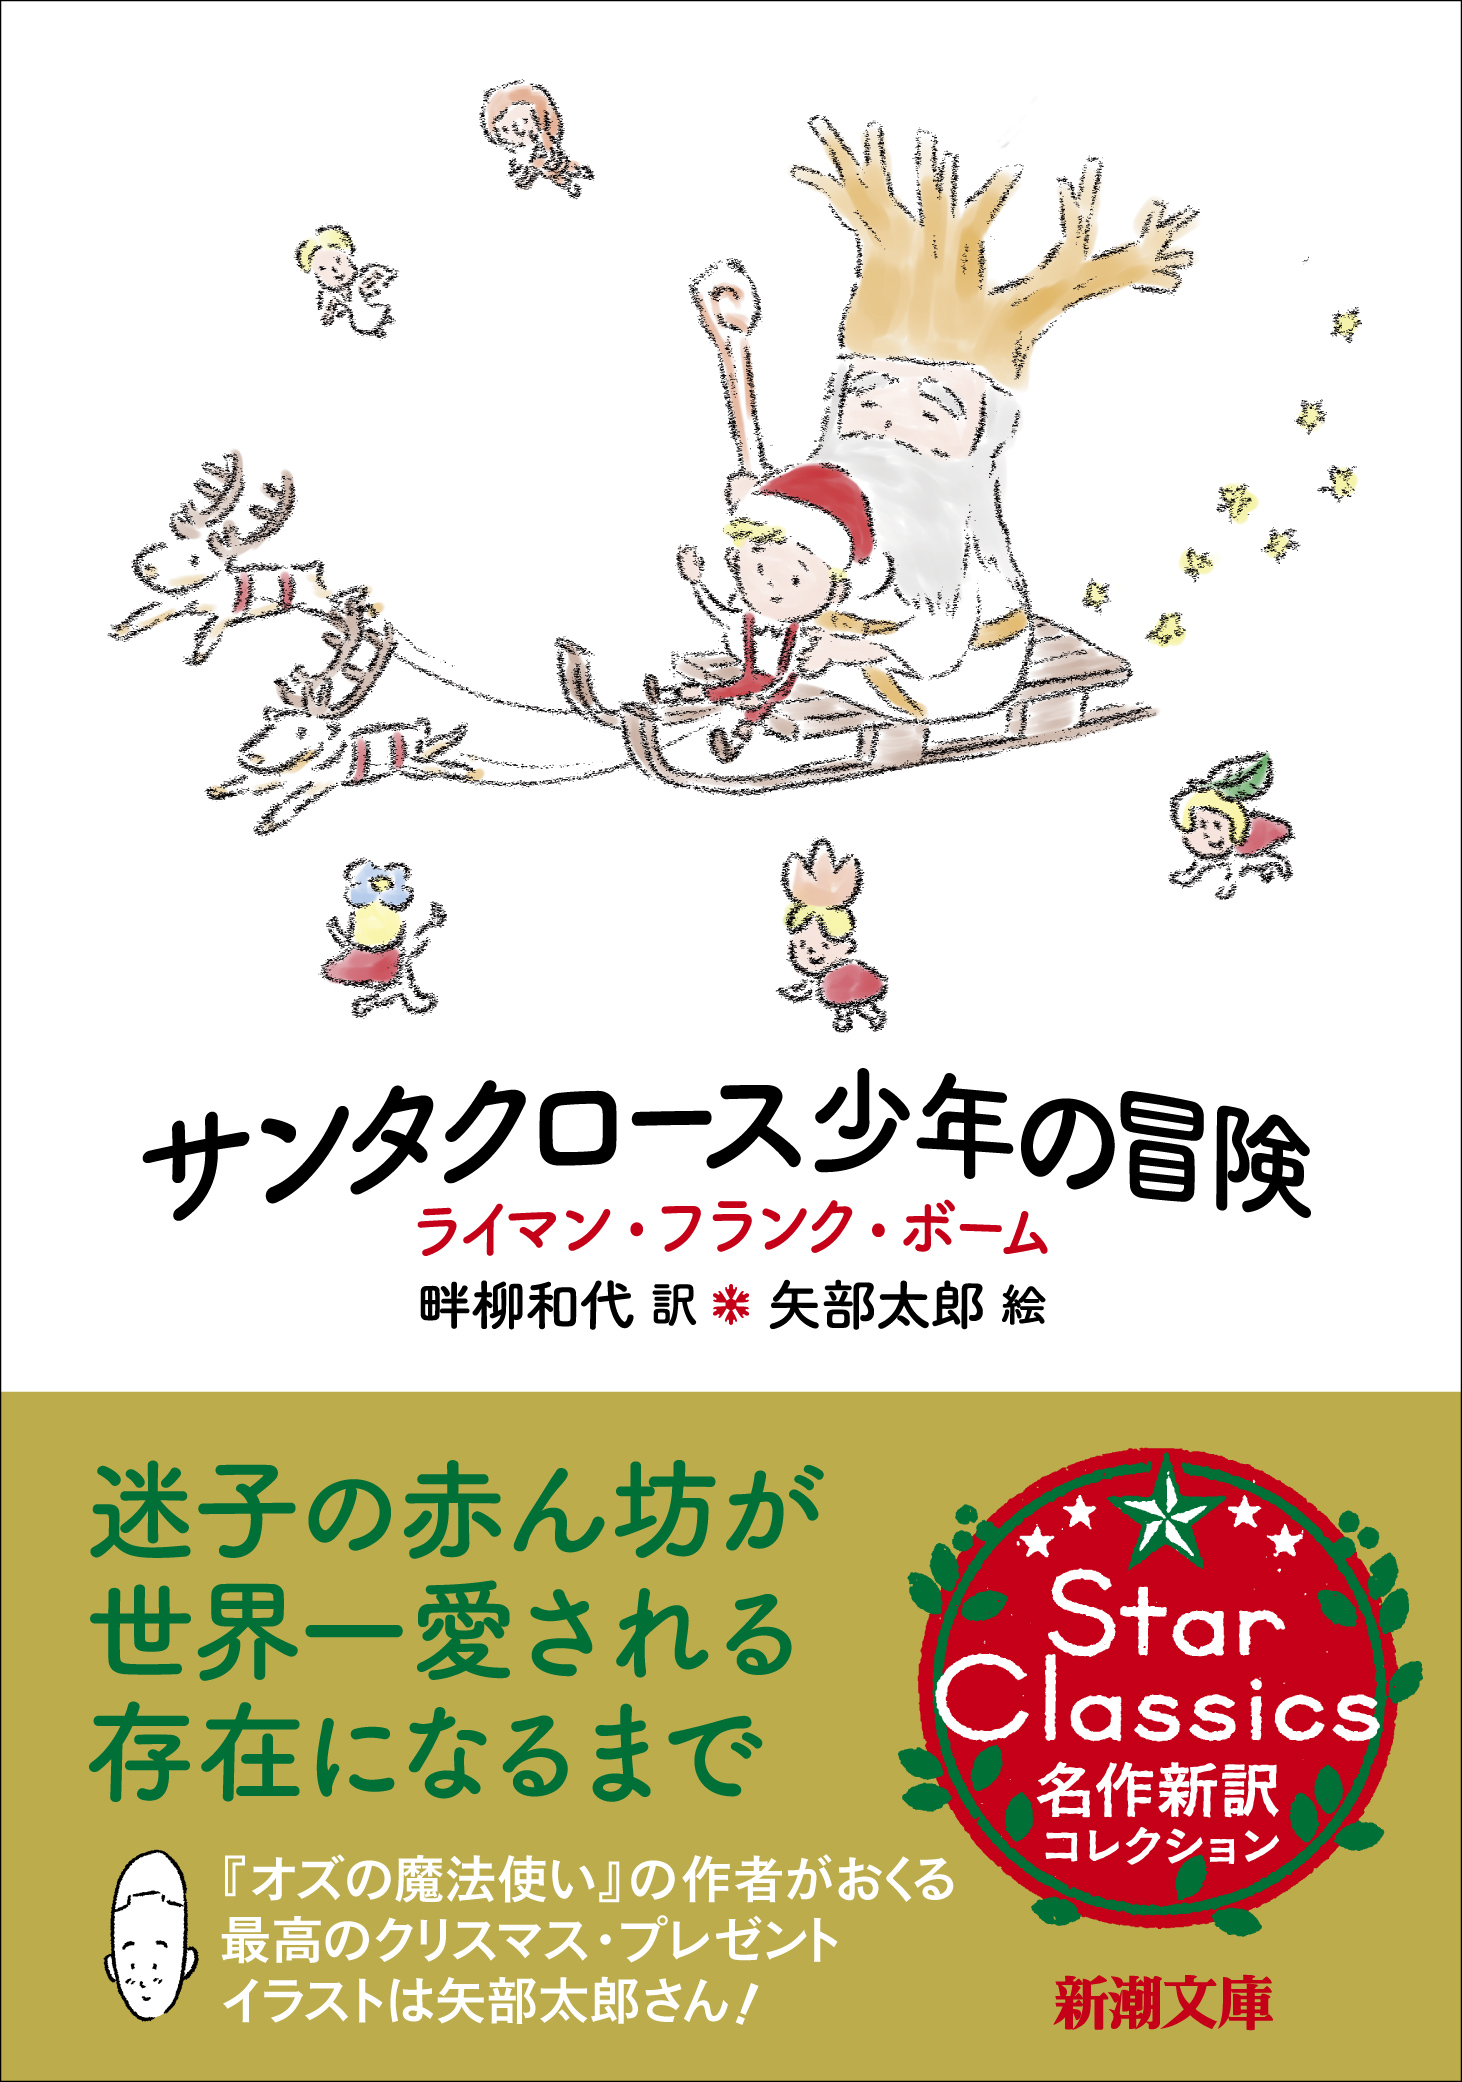 大家さんと僕 矢部太郎さんが装幀 挿絵を担当 今年最高のクリスマス